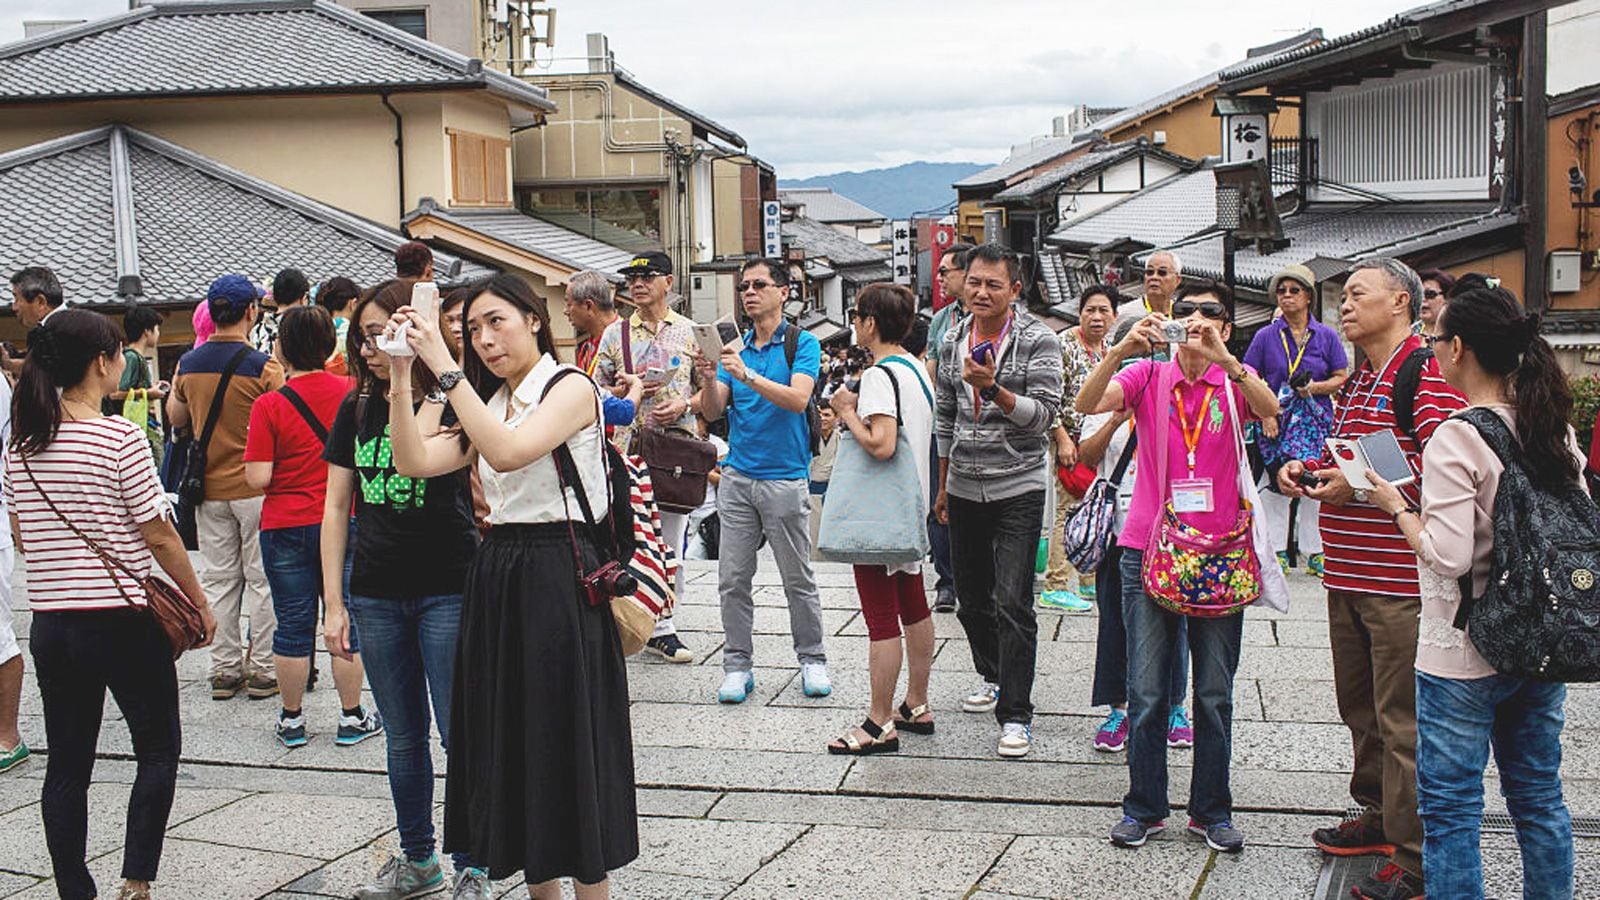 京都が 観光公害 を克服するための具体的方策 レジャー 観光 ホテル 東洋経済オンライン 社会をよくする経済ニュース